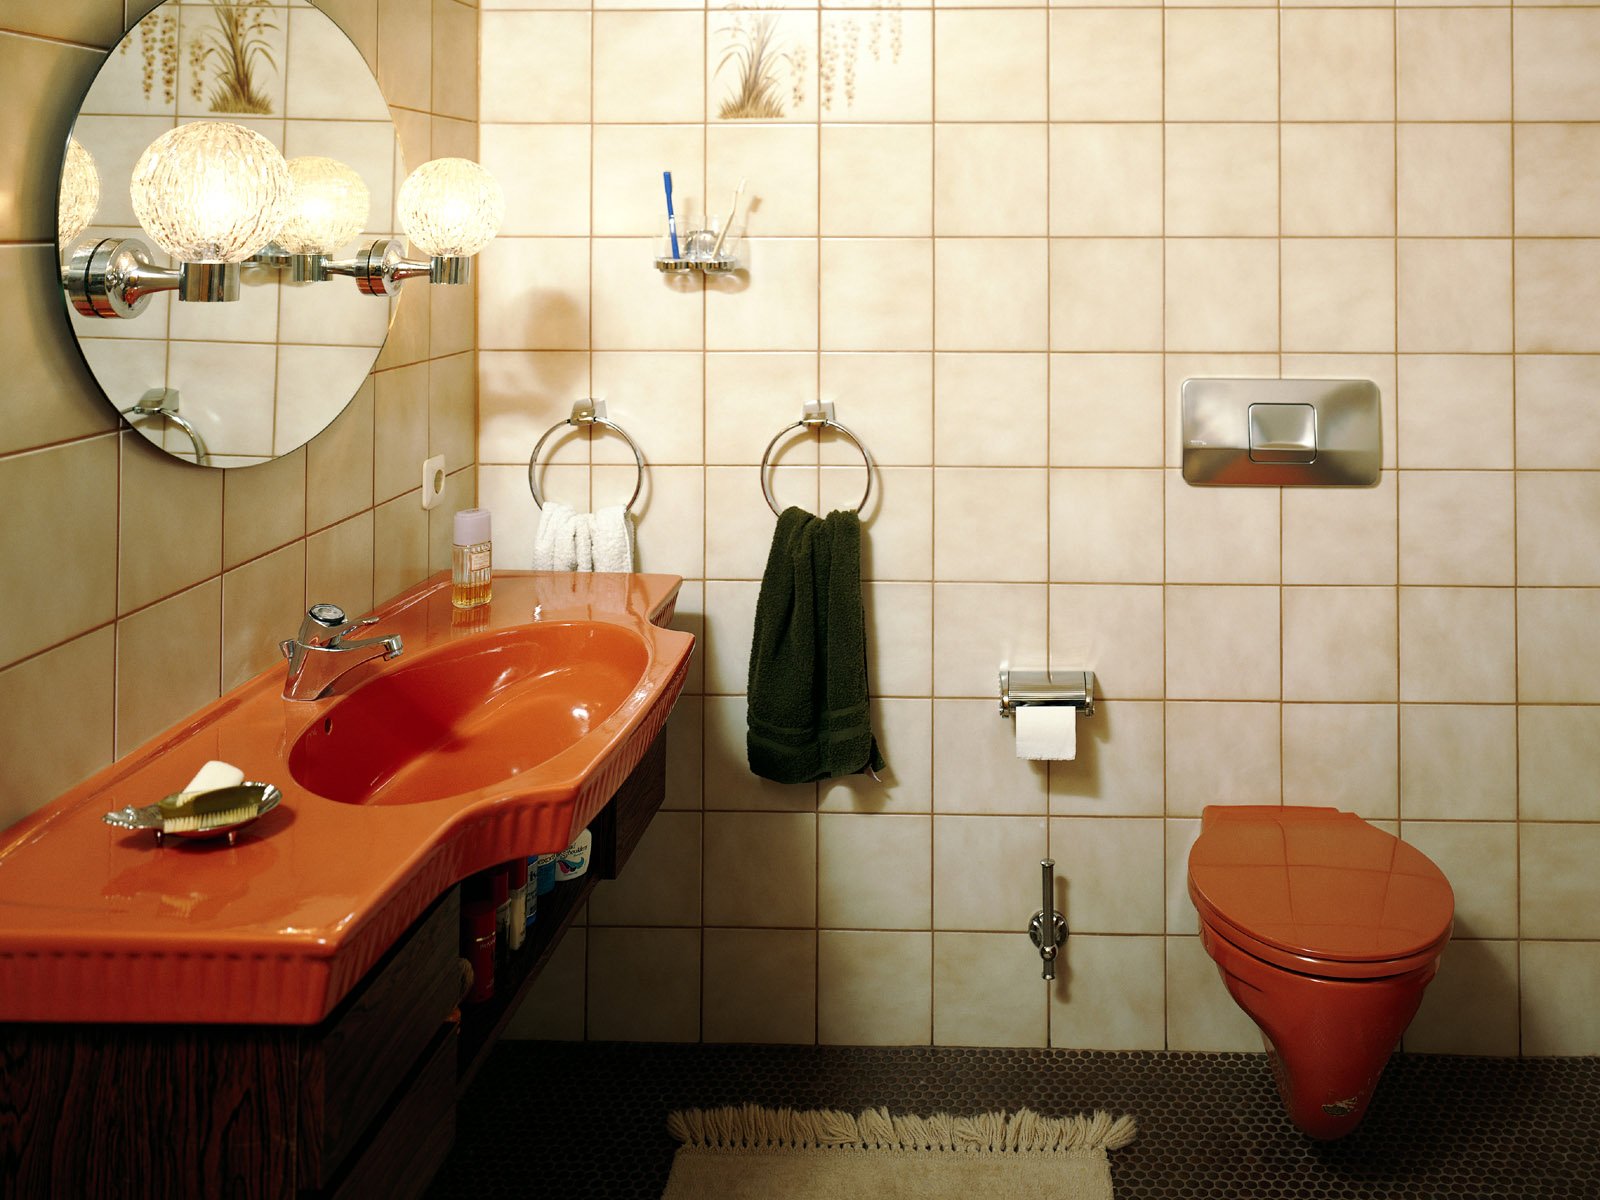 Ванная комната в Советском стиле